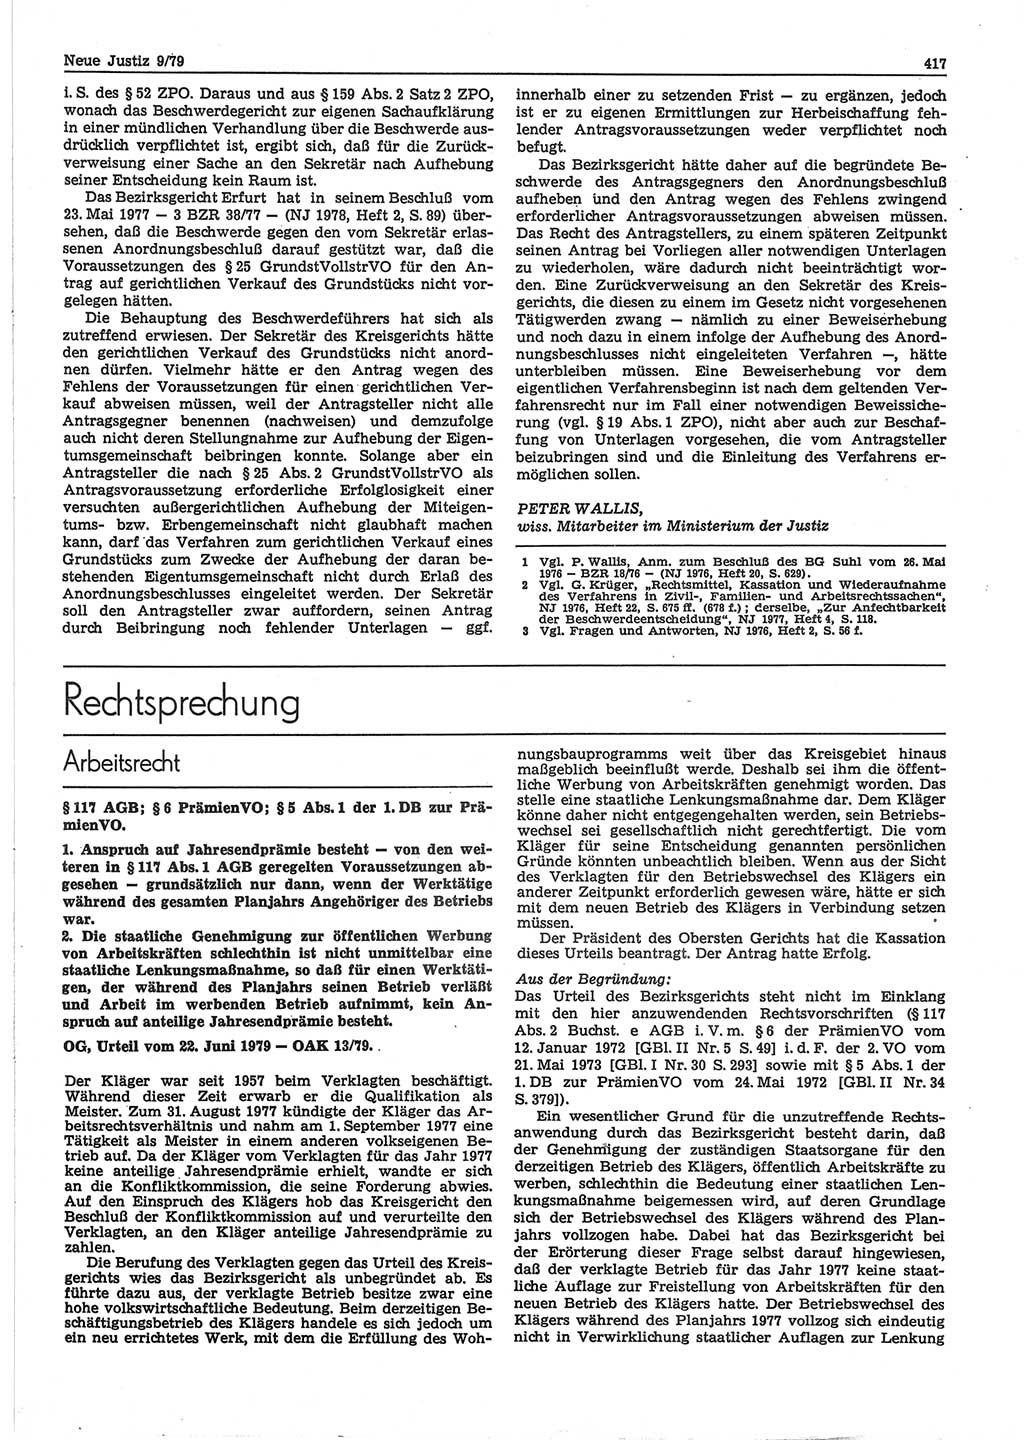 Neue Justiz (NJ), Zeitschrift für sozialistisches Recht und Gesetzlichkeit [Deutsche Demokratische Republik (DDR)], 33. Jahrgang 1979, Seite 417 (NJ DDR 1979, S. 417)